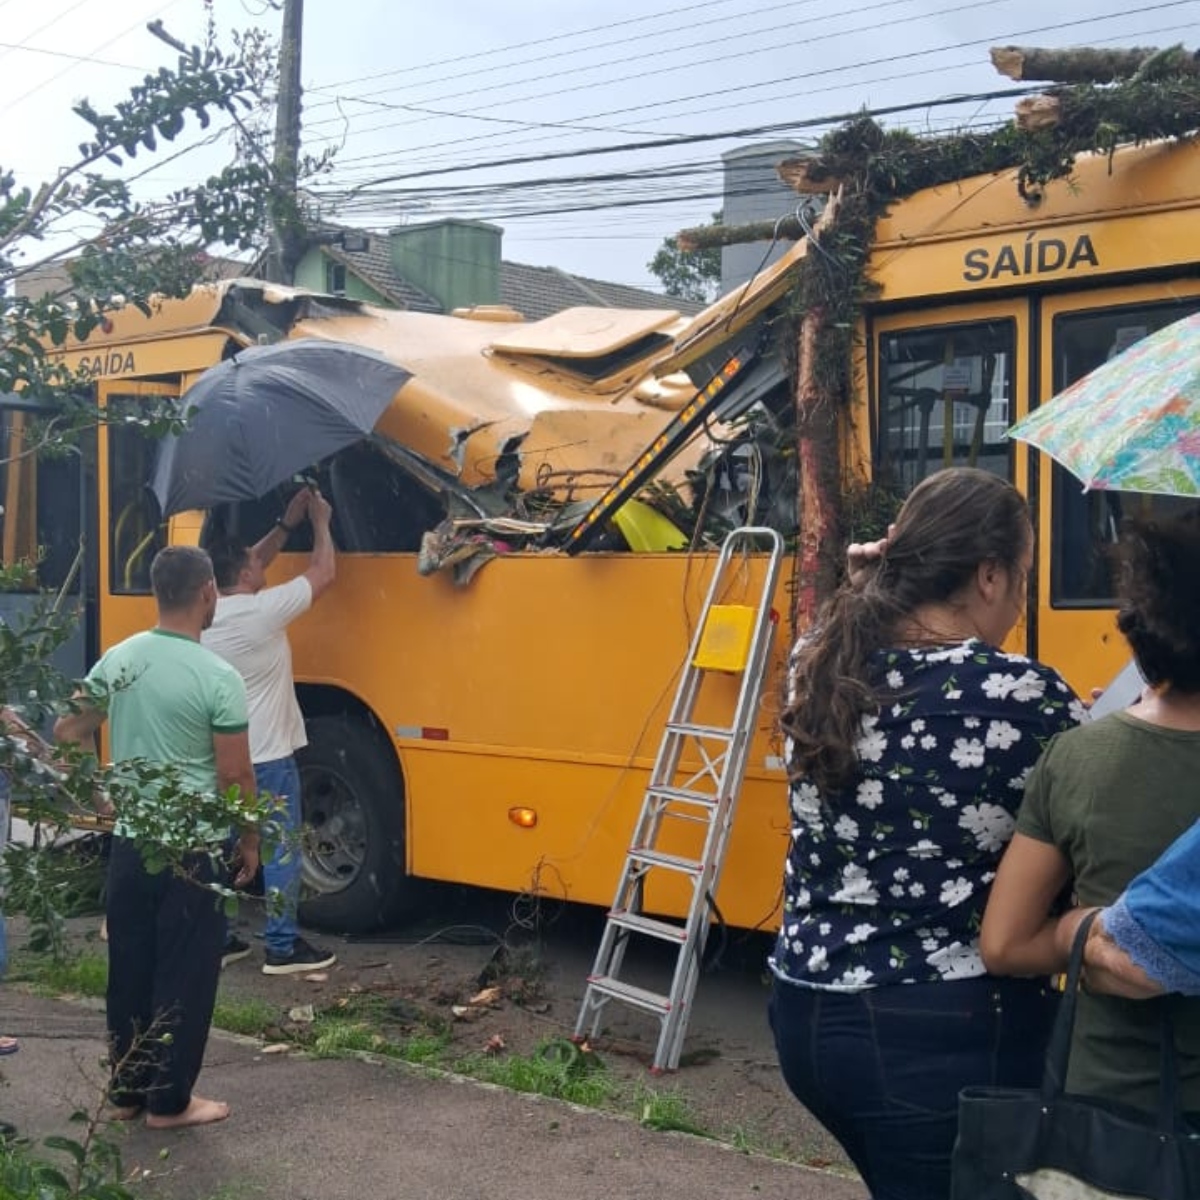  Árvore cai em ônibus durante temporal em Curitiba 